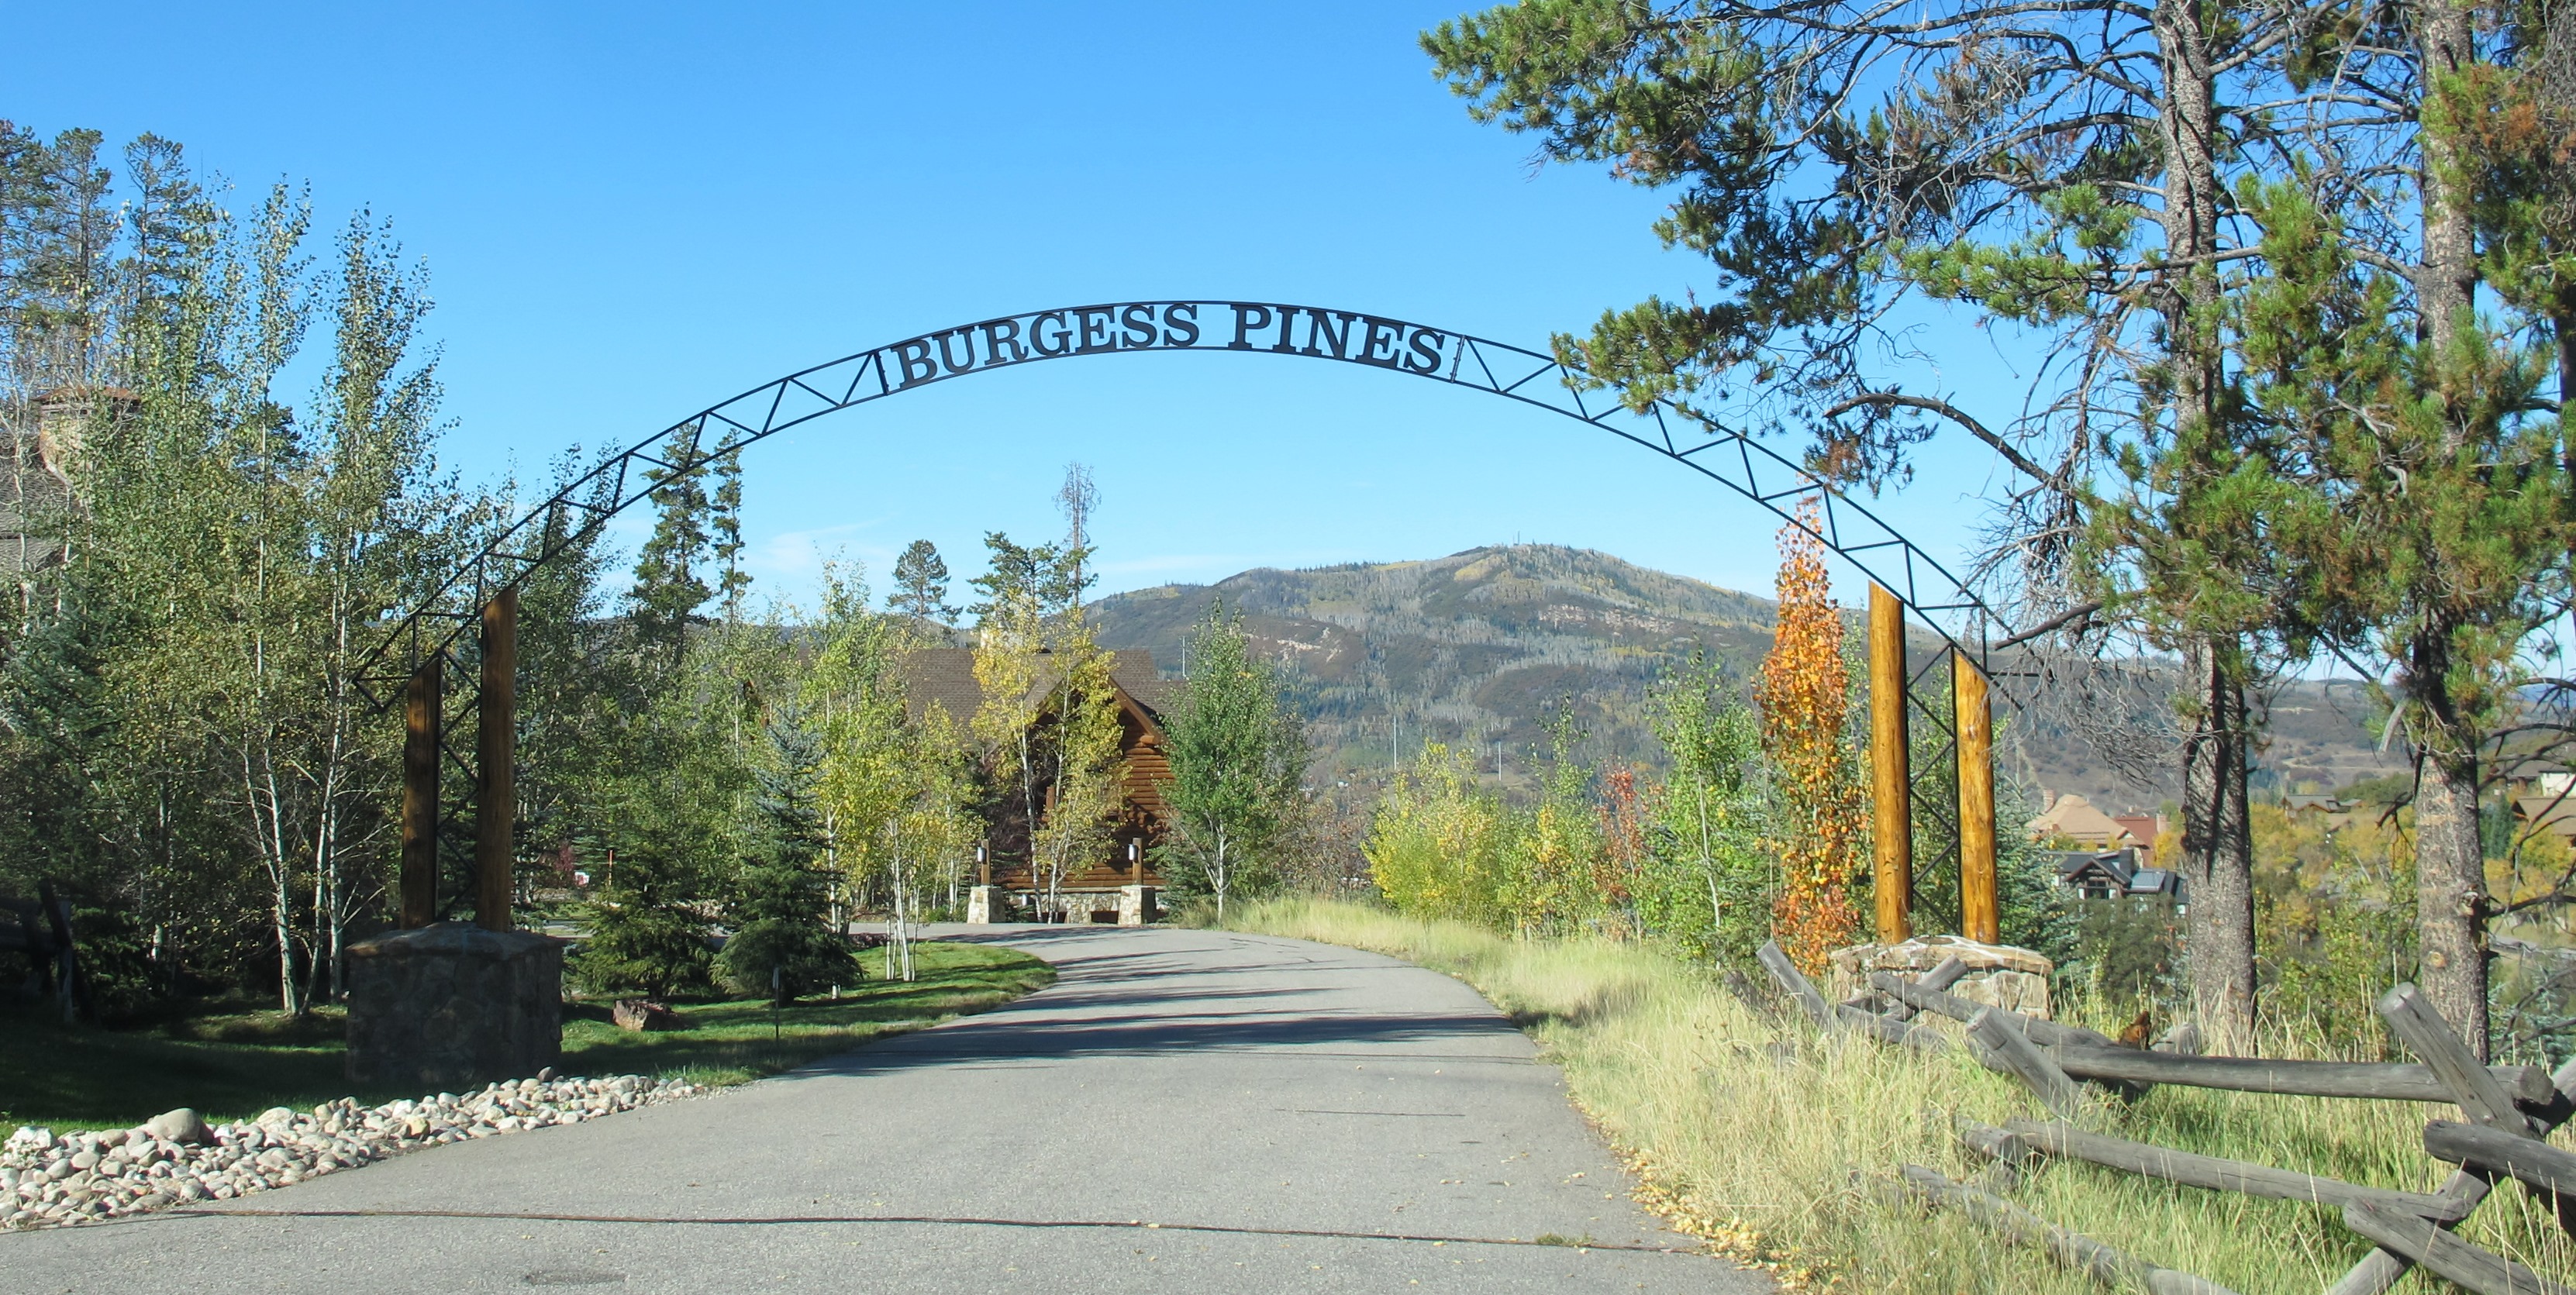 Burgess Pines luxury homes